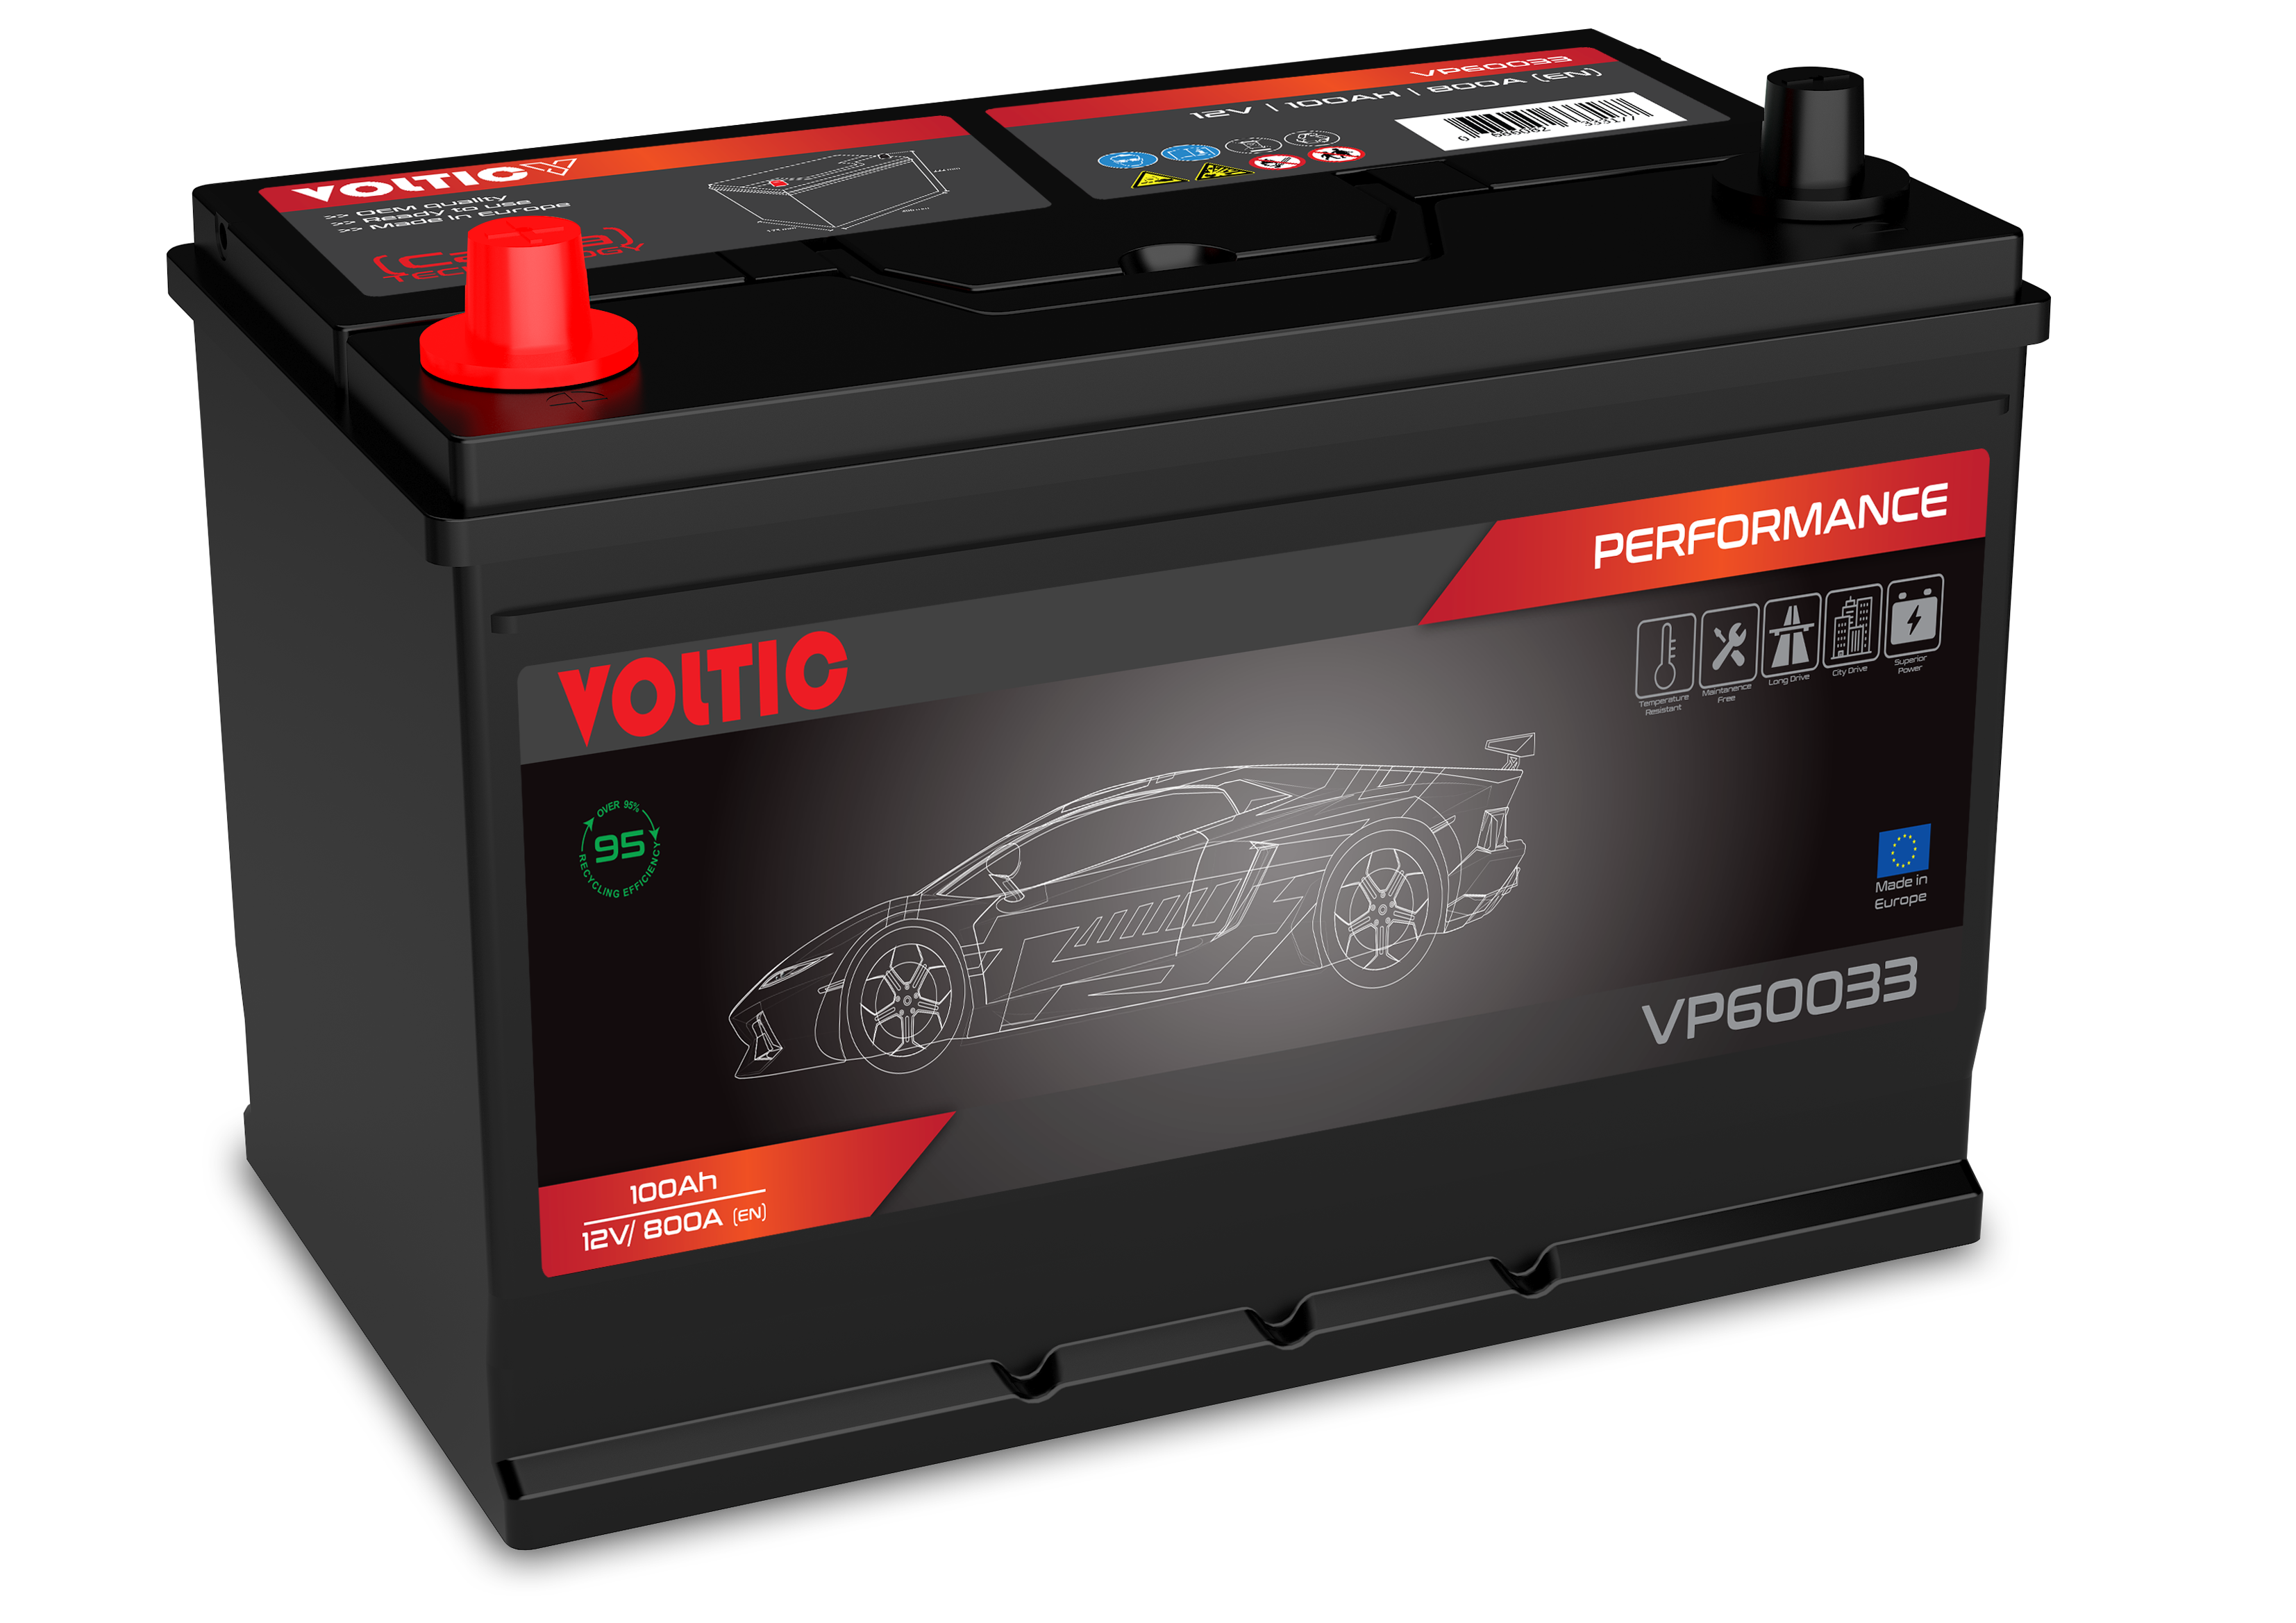 Voltic VP60033 Perfomance 100Ah Autobatterie 595 405 083